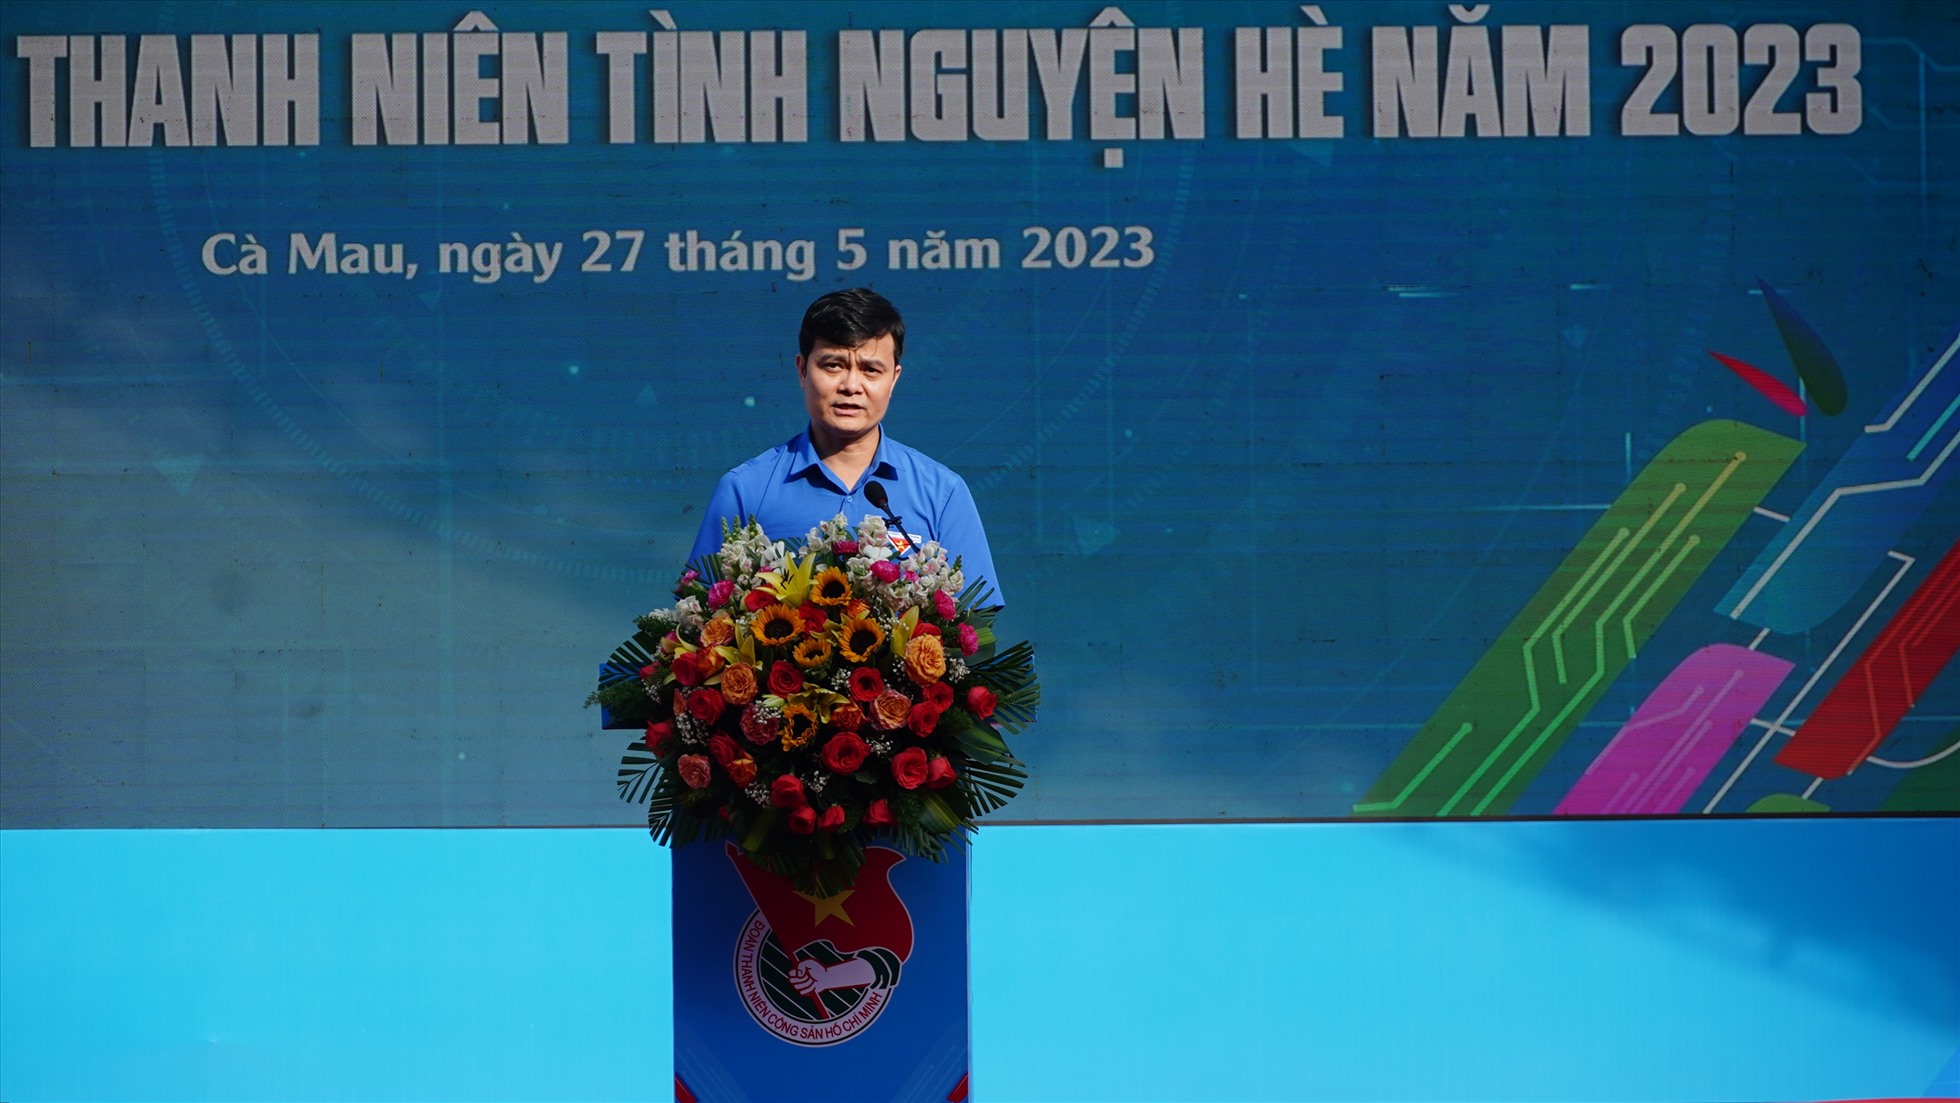 Ông Bùi Quang Huy - Ủy viên dự khuyết BCH Trung ương Đảng, Bí thư thứ nhất Ban chấp hành Trung ương Đoàn TNCS Hồ Chí Minh. Ảnh: Tạ Quang